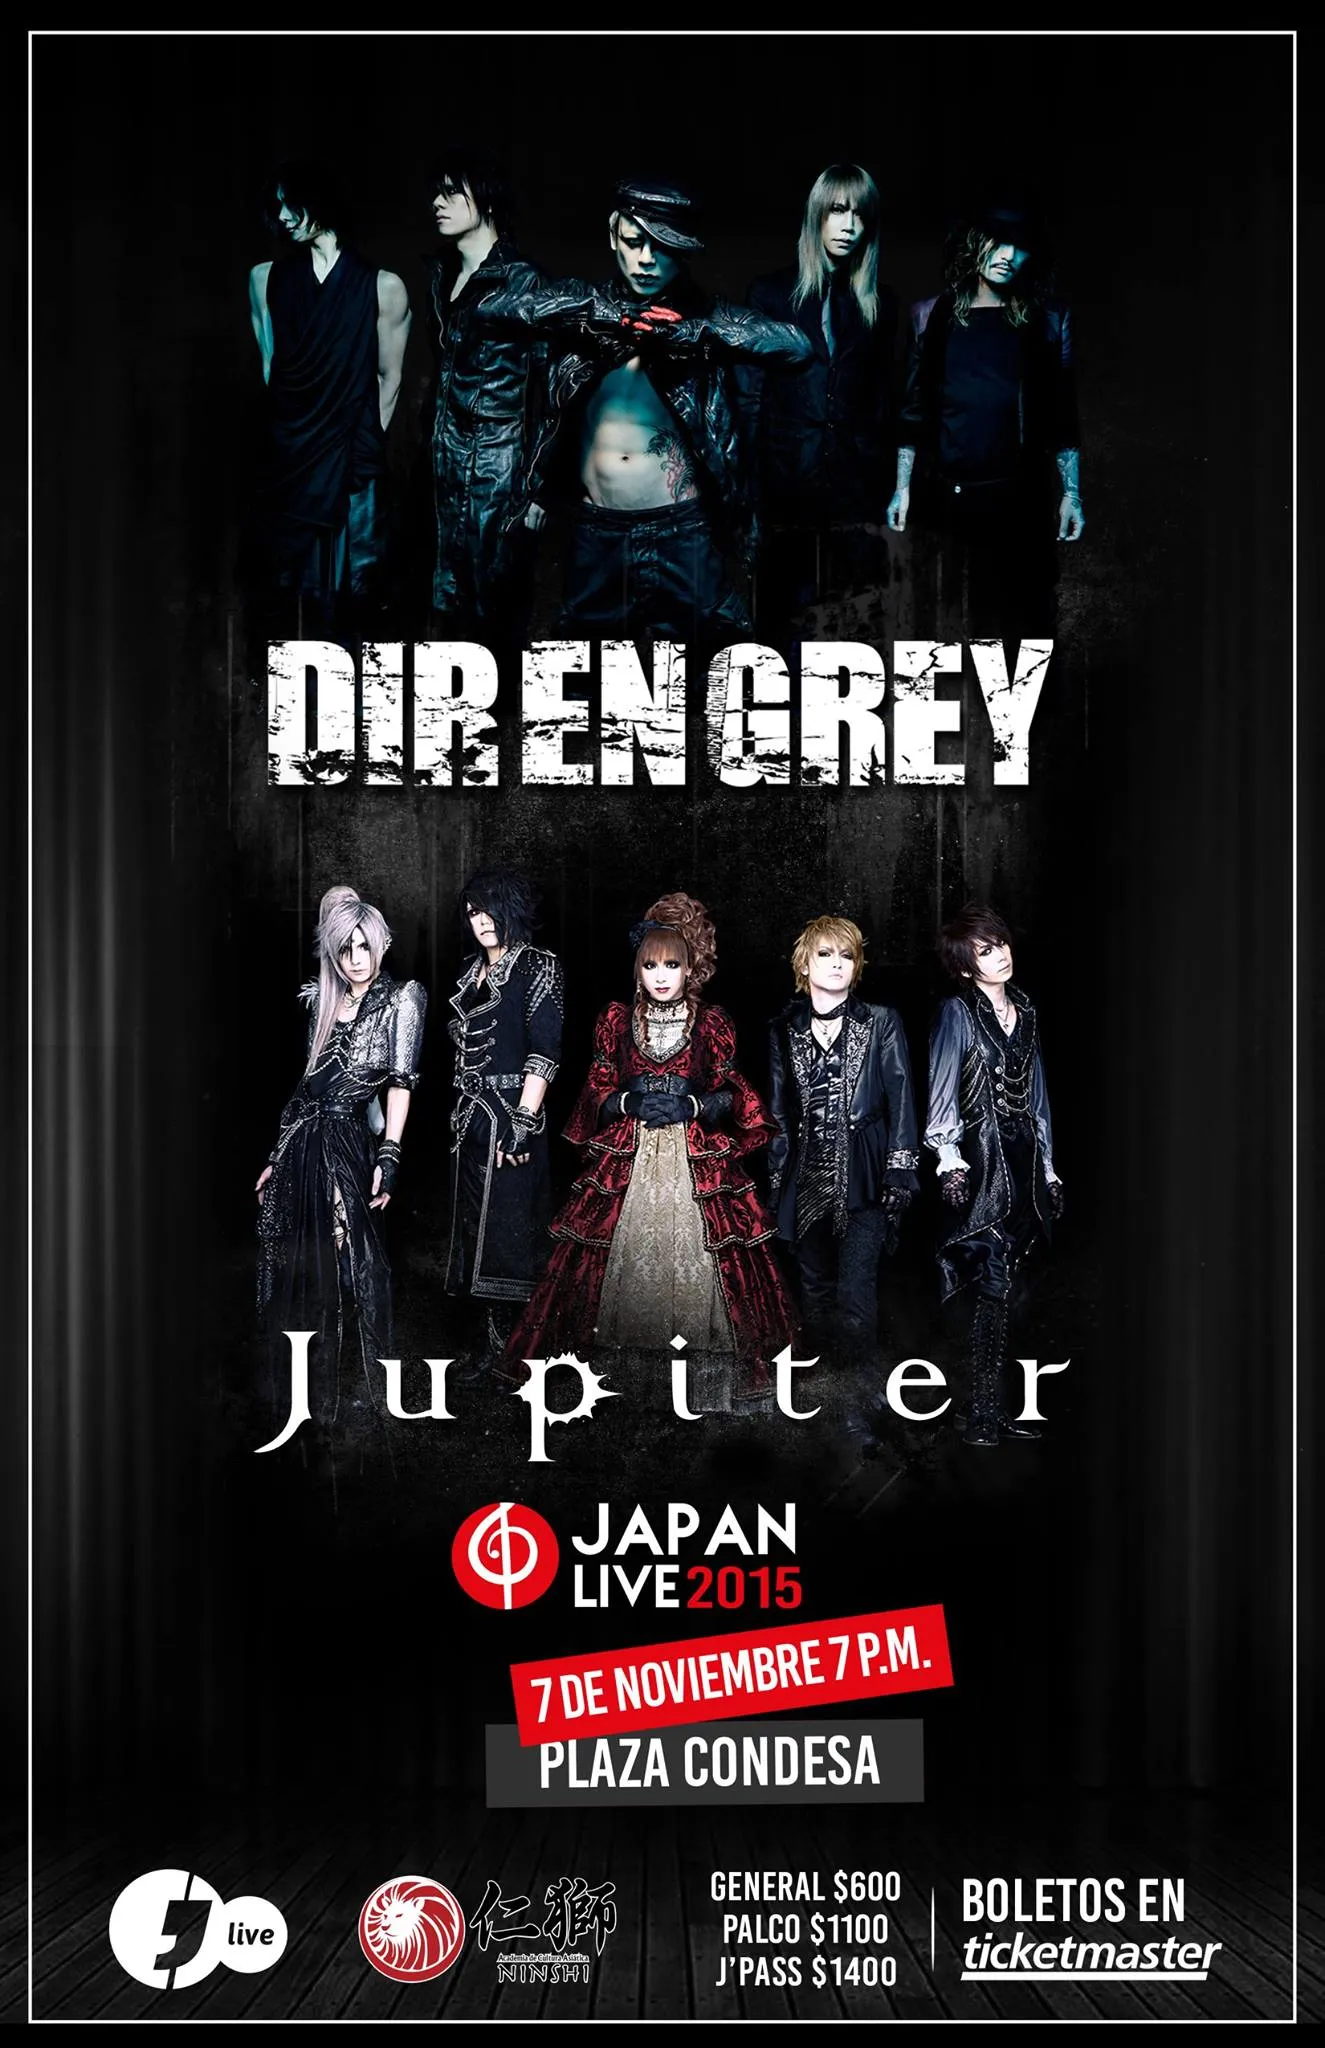 Japan Live 2015 : Dir en Grey y Jupiter